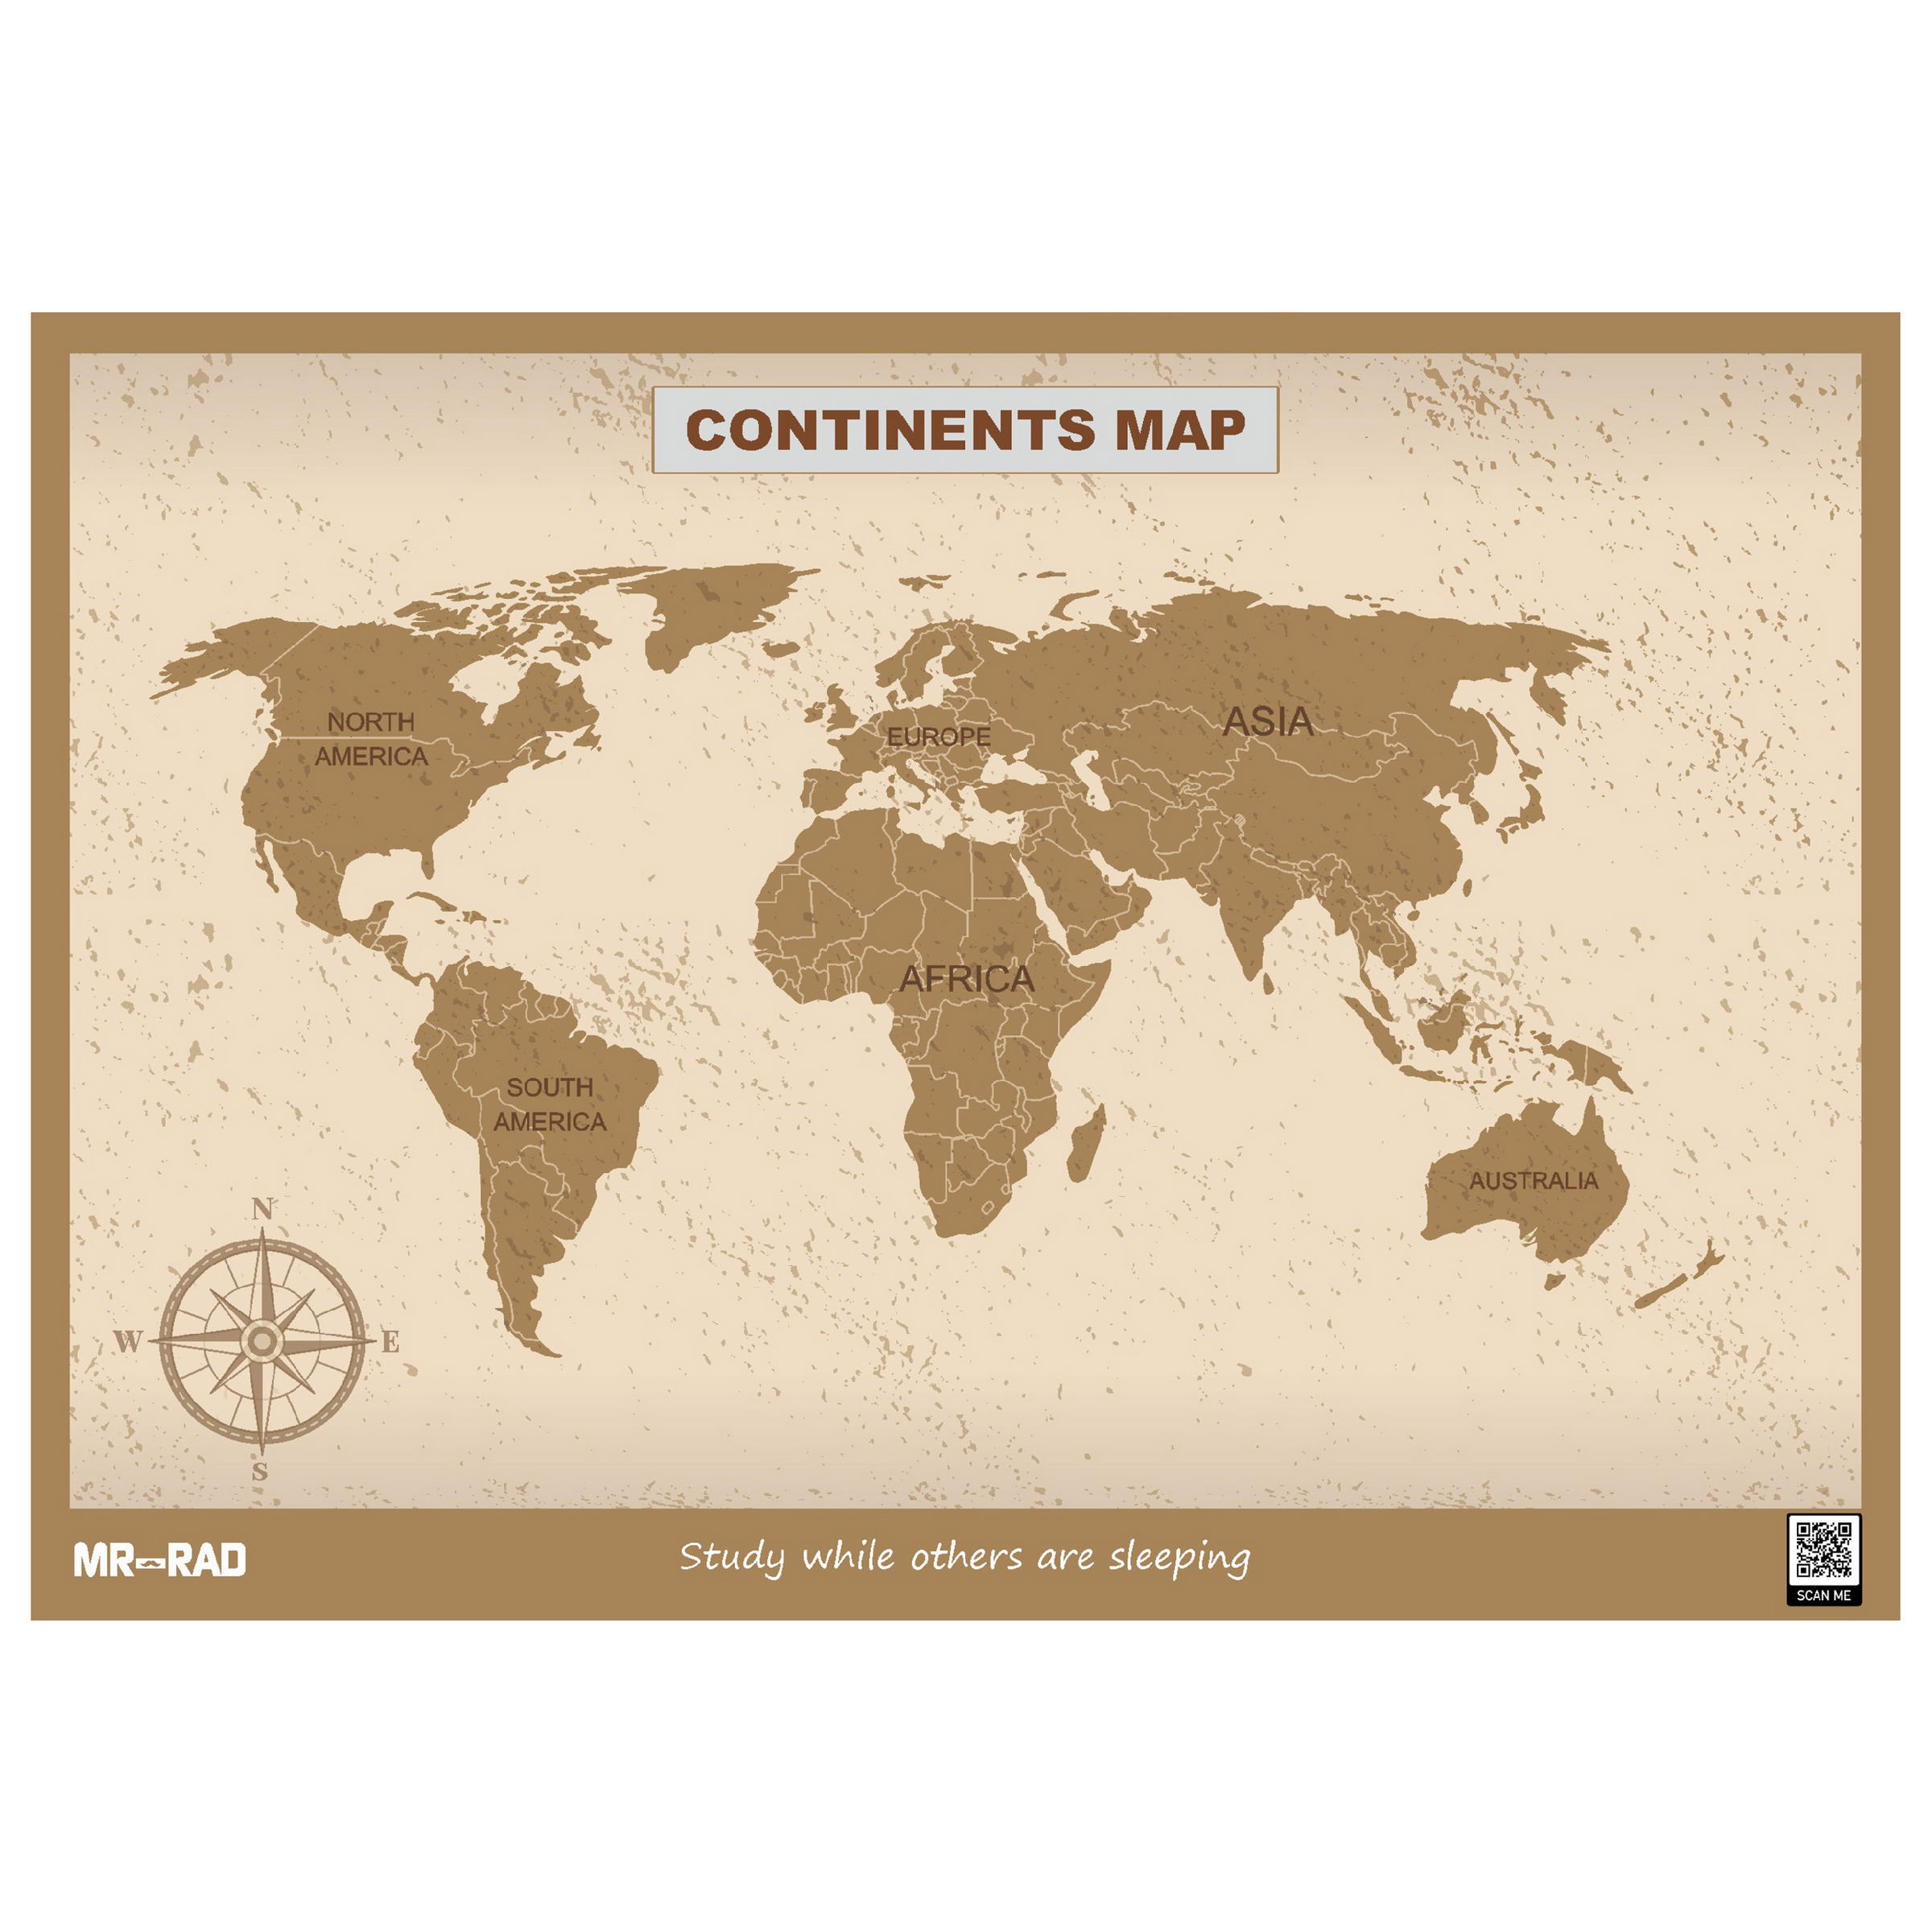 پوستر آموزشی مستر راد طرح نقشه قاره ها مدل M9060